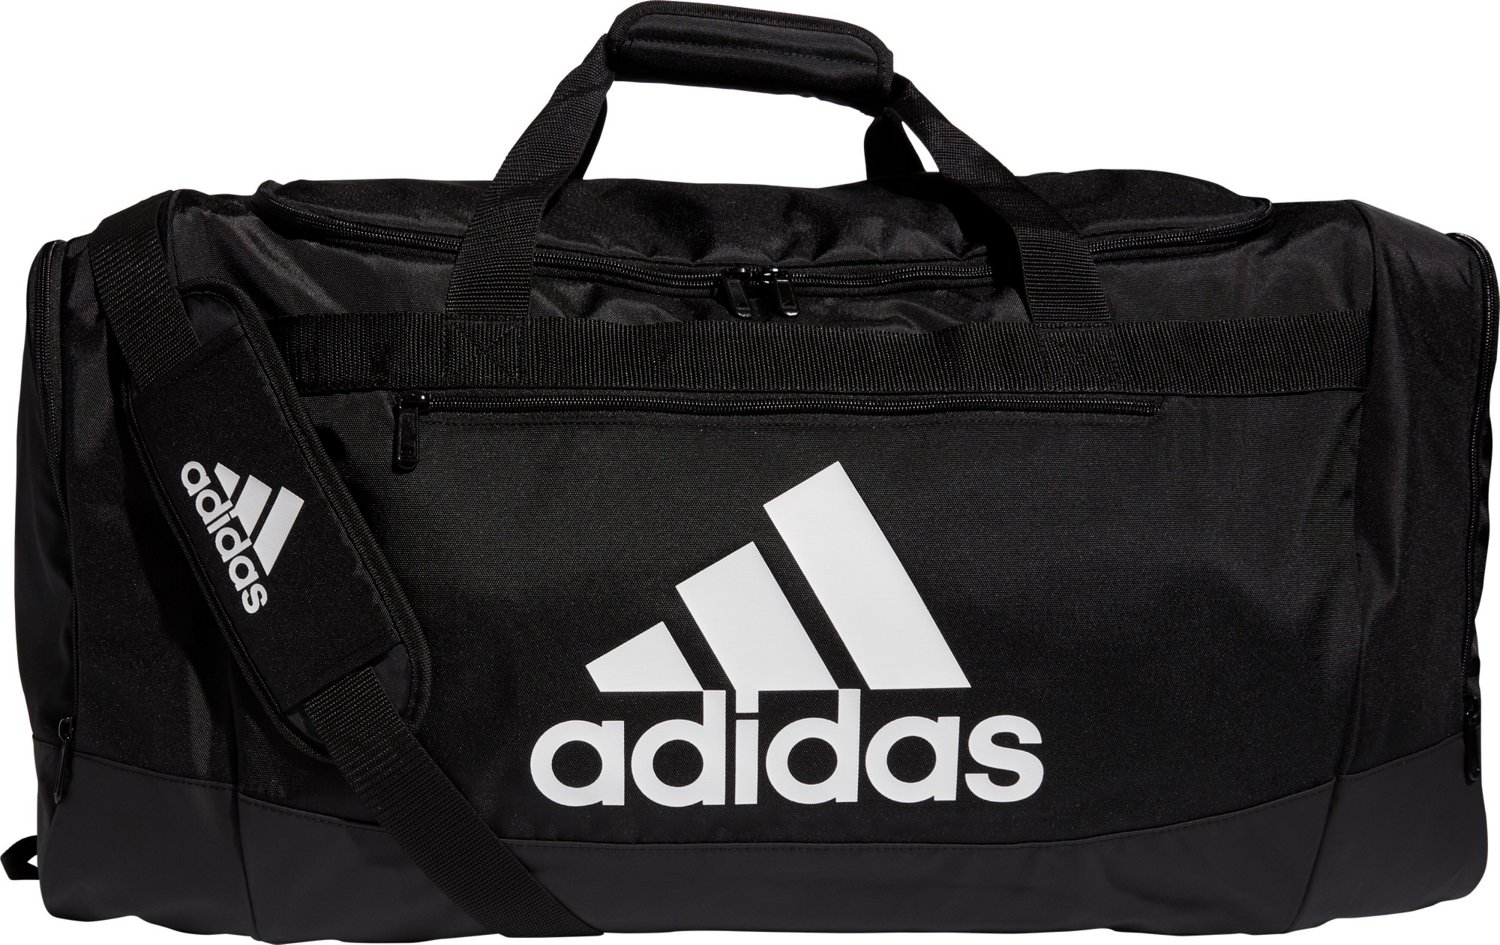 Encogerse de hombros equipo Ventilar adidas Defender IV Large Duffel Bag | Academy